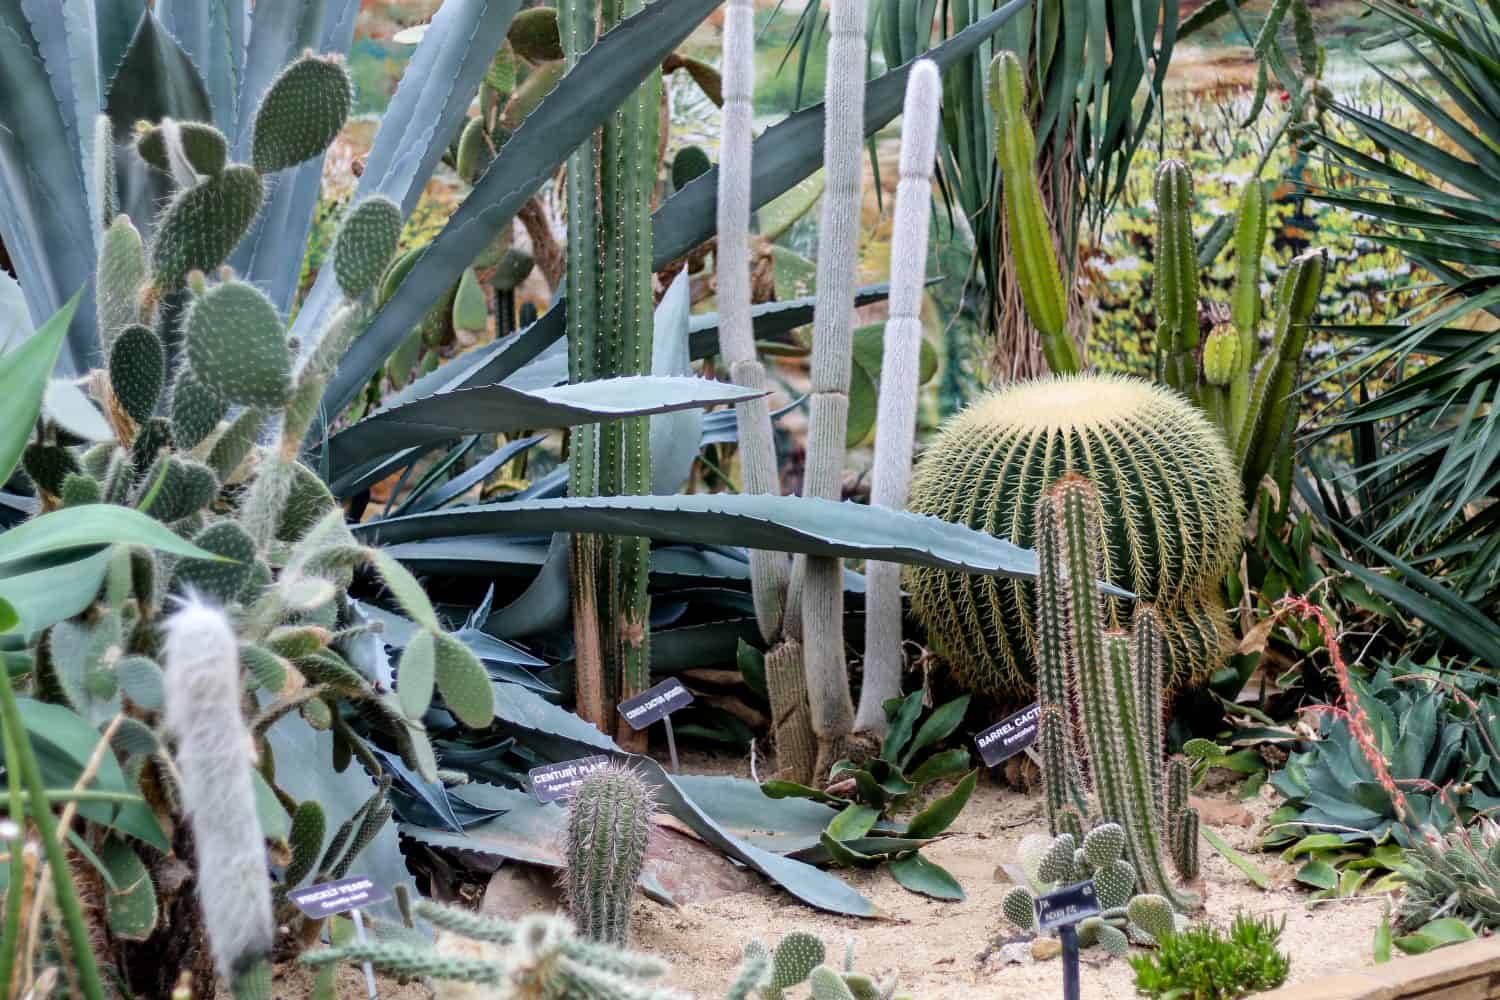 Desert Cactus garden in Rockefeller greenhouse in Cleveland, Ohio